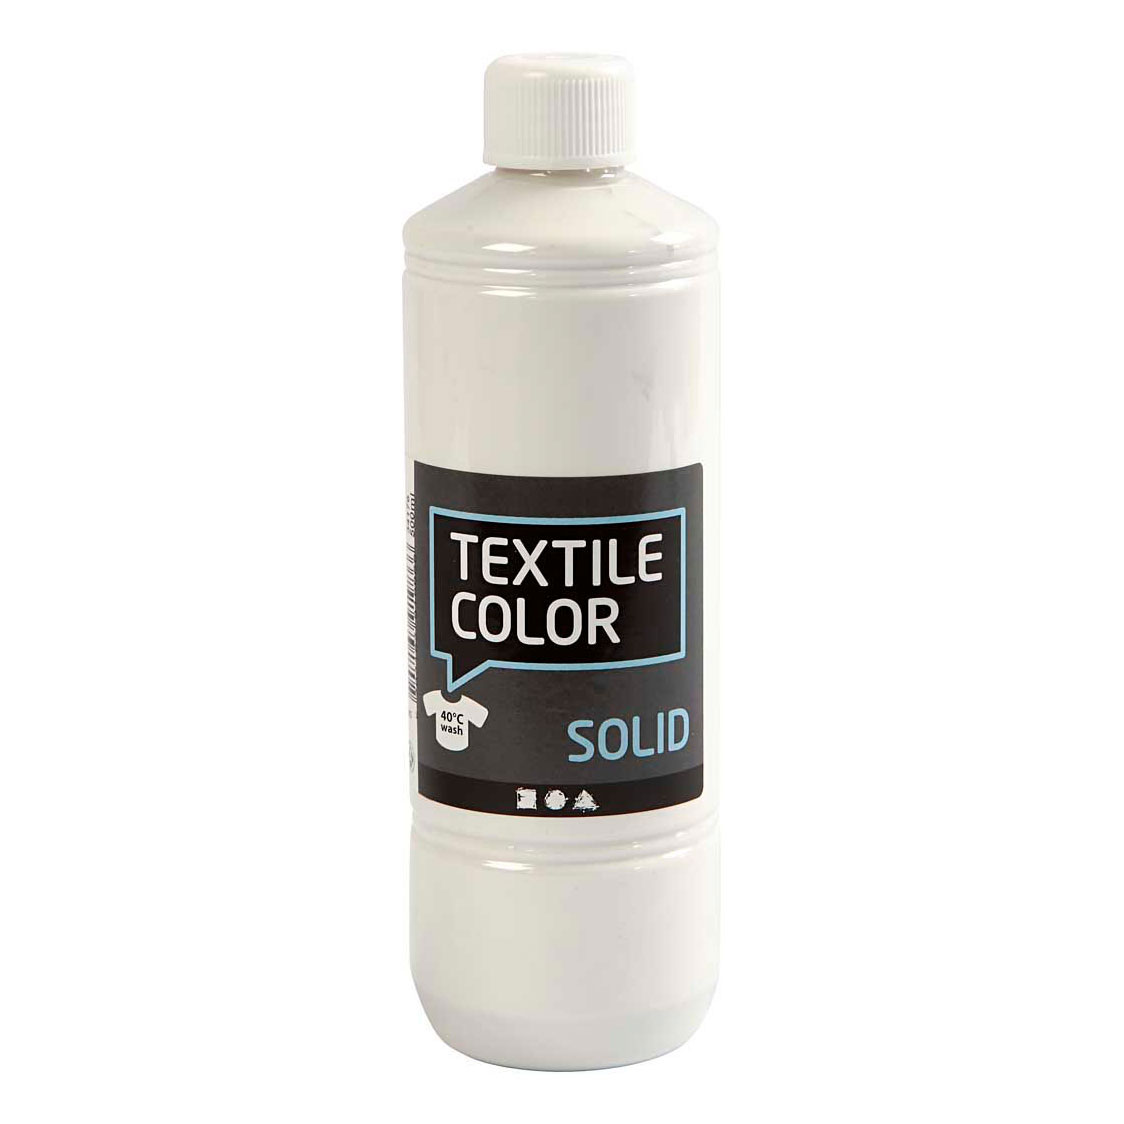 Peinture de couleur textile - Blanc opaque, 500 ml